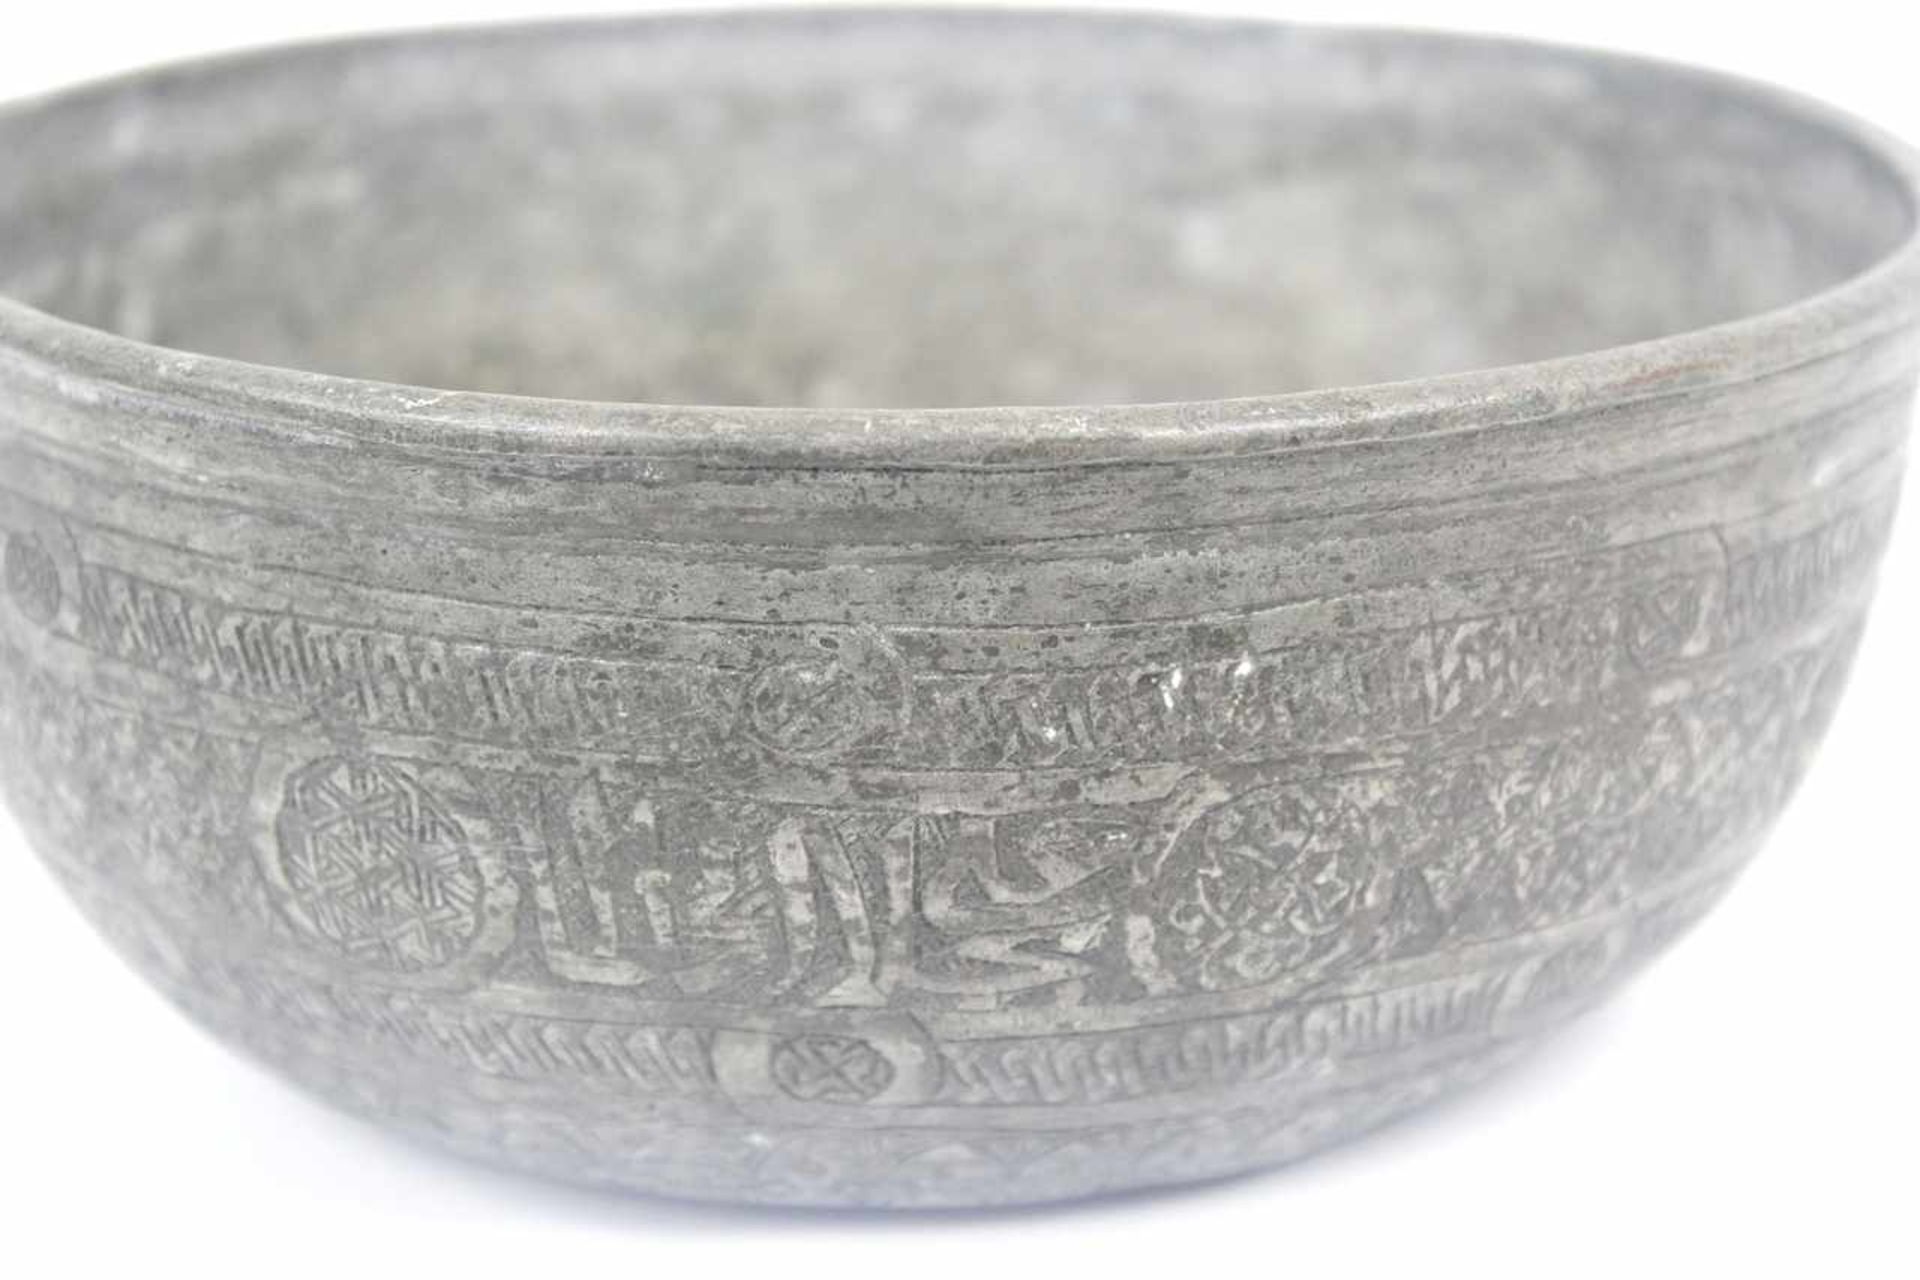 Safawiden Dynastie verzinnte und gravierte Schale aus Kupferbronze Iran 17./18.Jhdt. - Bild 5 aus 8